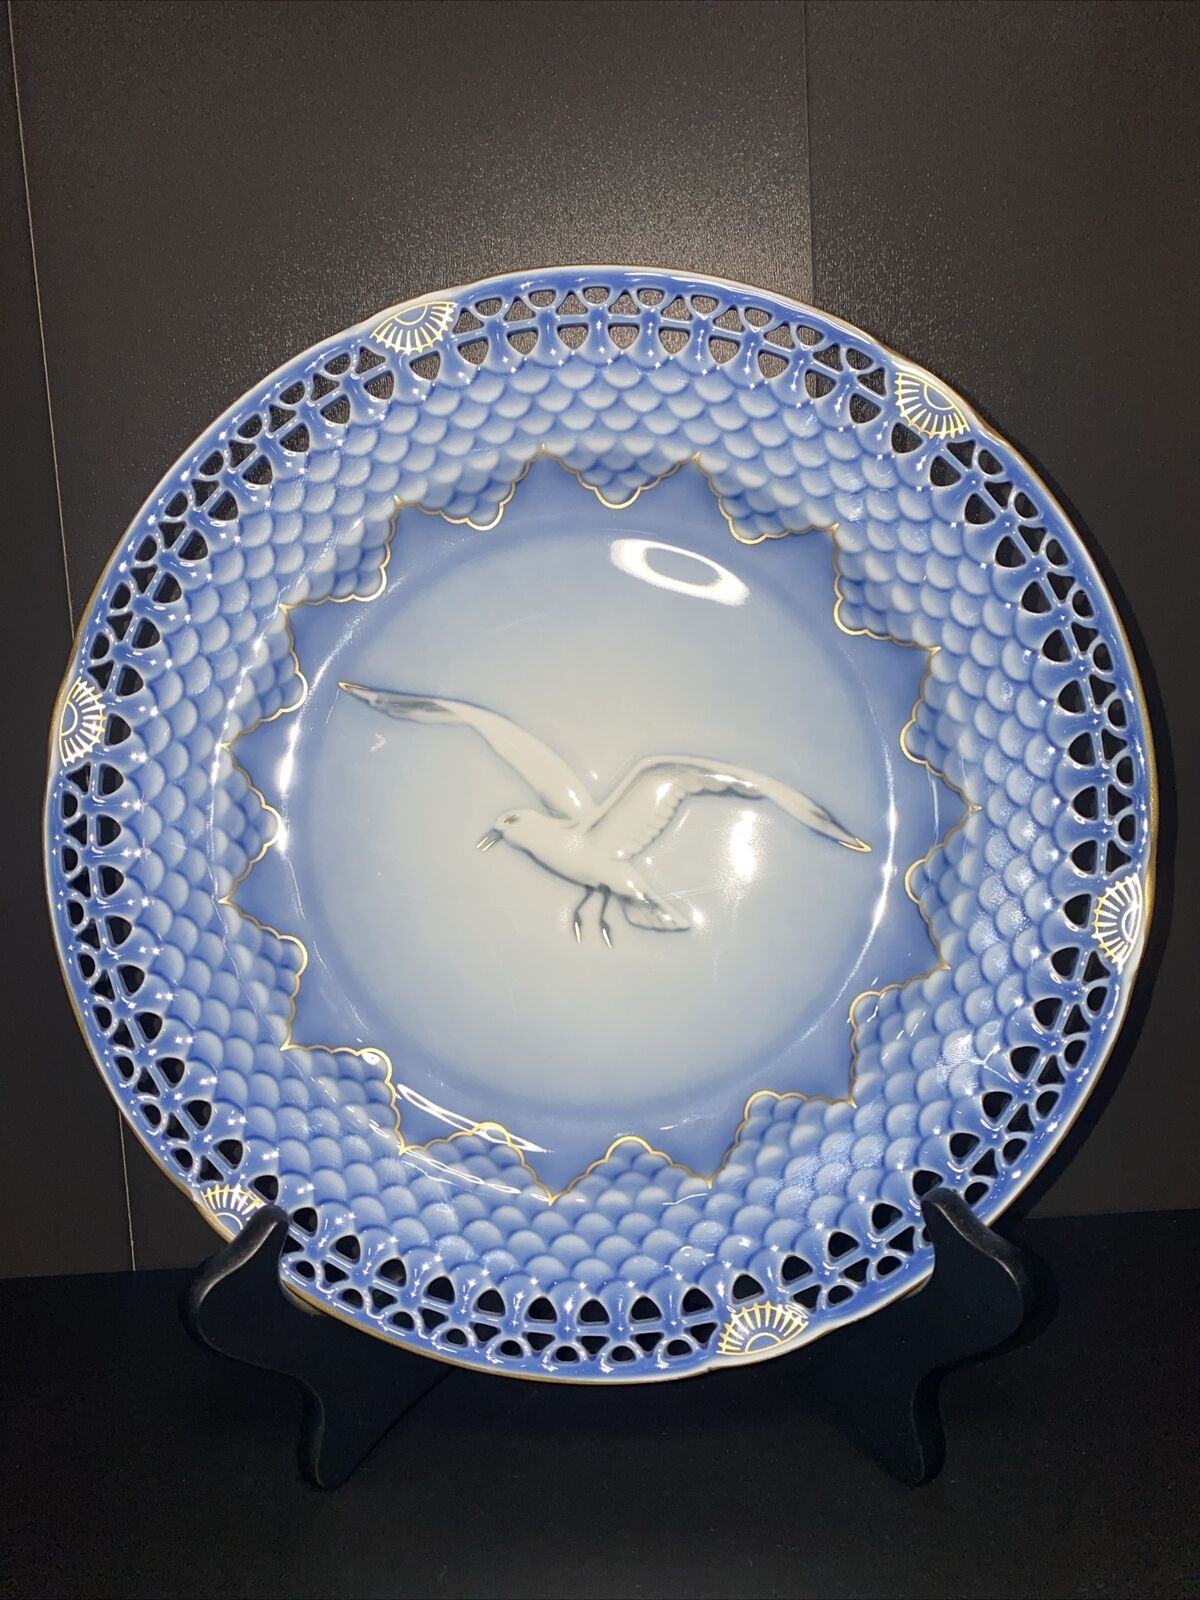 VTG Seagull Anniversary Plate - Bing and Grondahl Copenhagen Porcelain